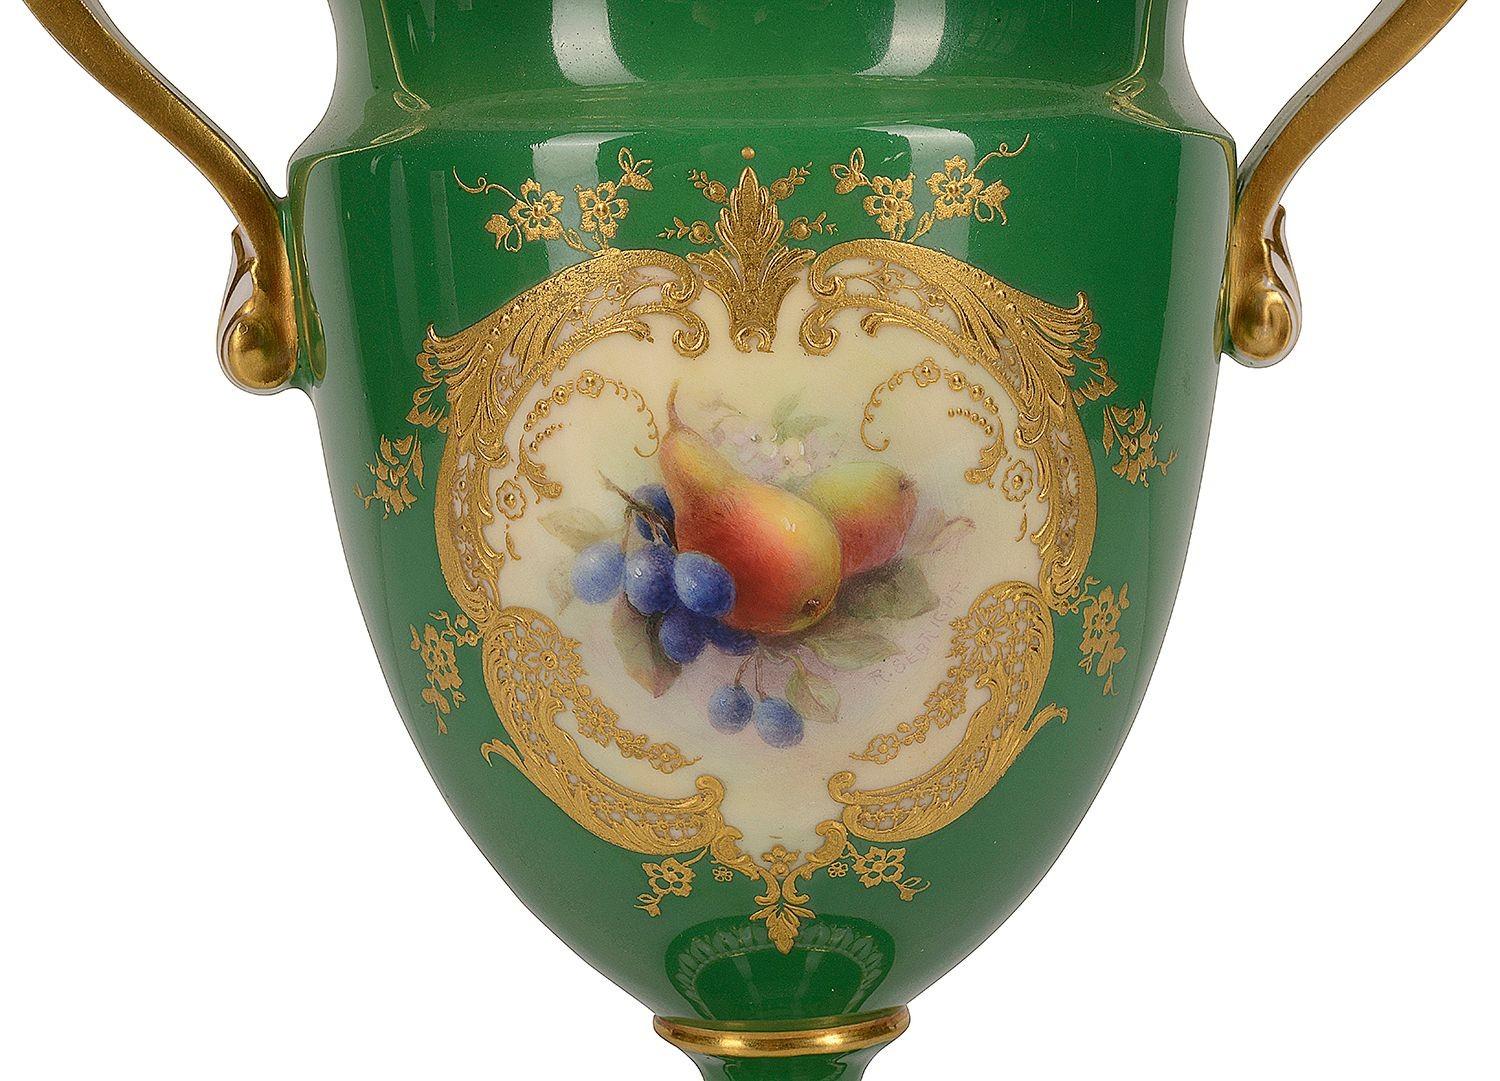 Vase à deux anses en porcelaine Royal Worcester de belle qualité, présentant un fond vert pâle avec des bordures et des éléments décoratifs classiques dorés, le panneau inséré peint à la main représentant des poires, des fleurs et des baies. Signé